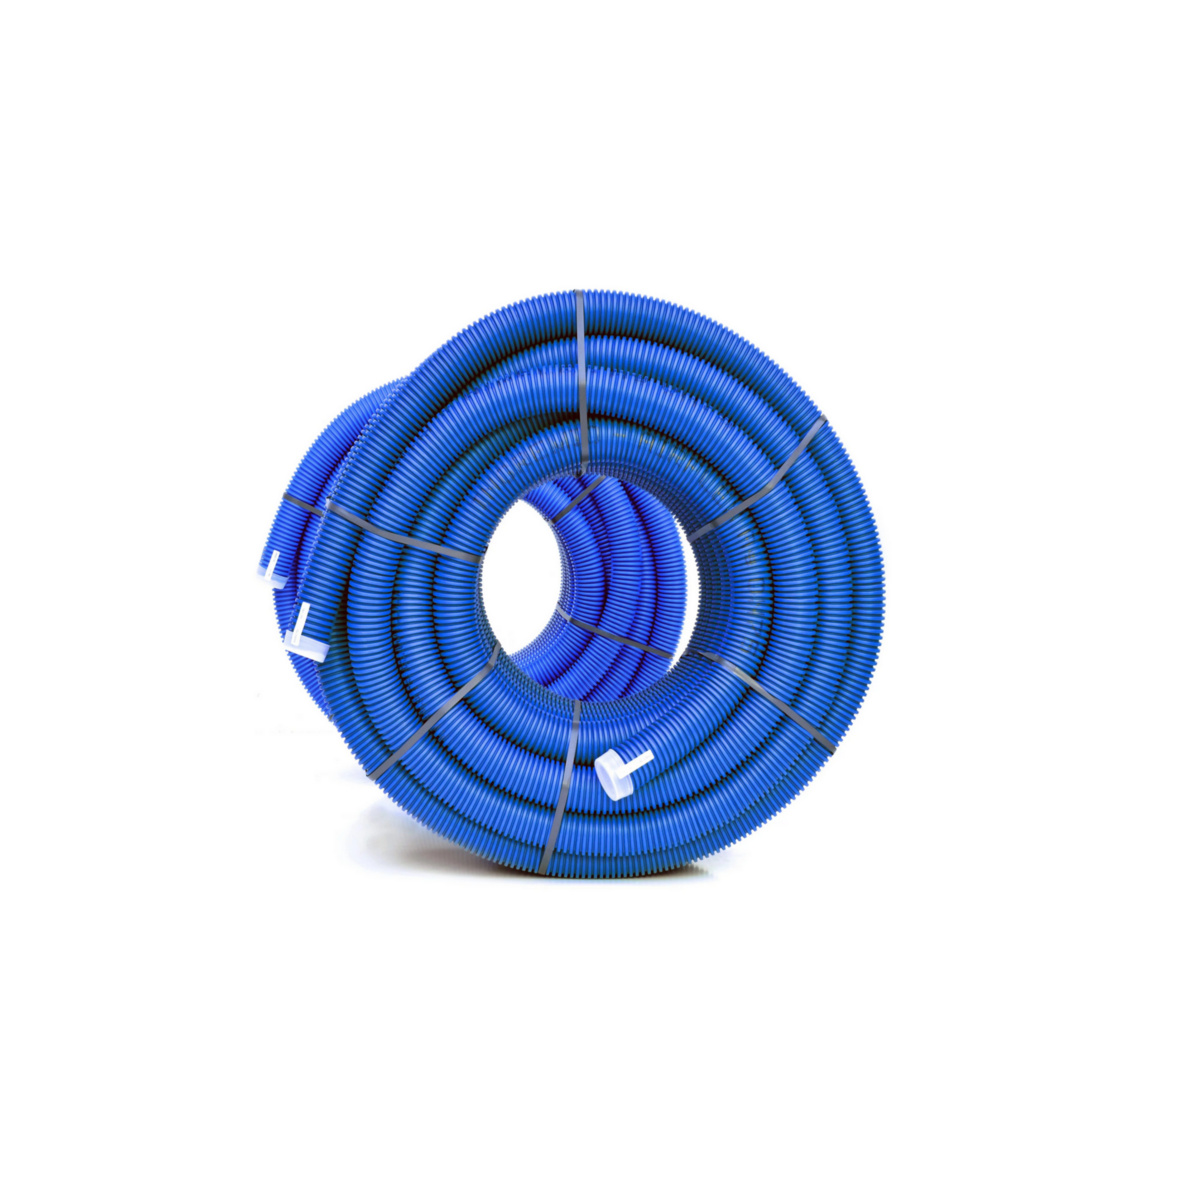 75 rura elastyczna RED X-VENT basic 50 mb antybakteryjna niebieska DWZ